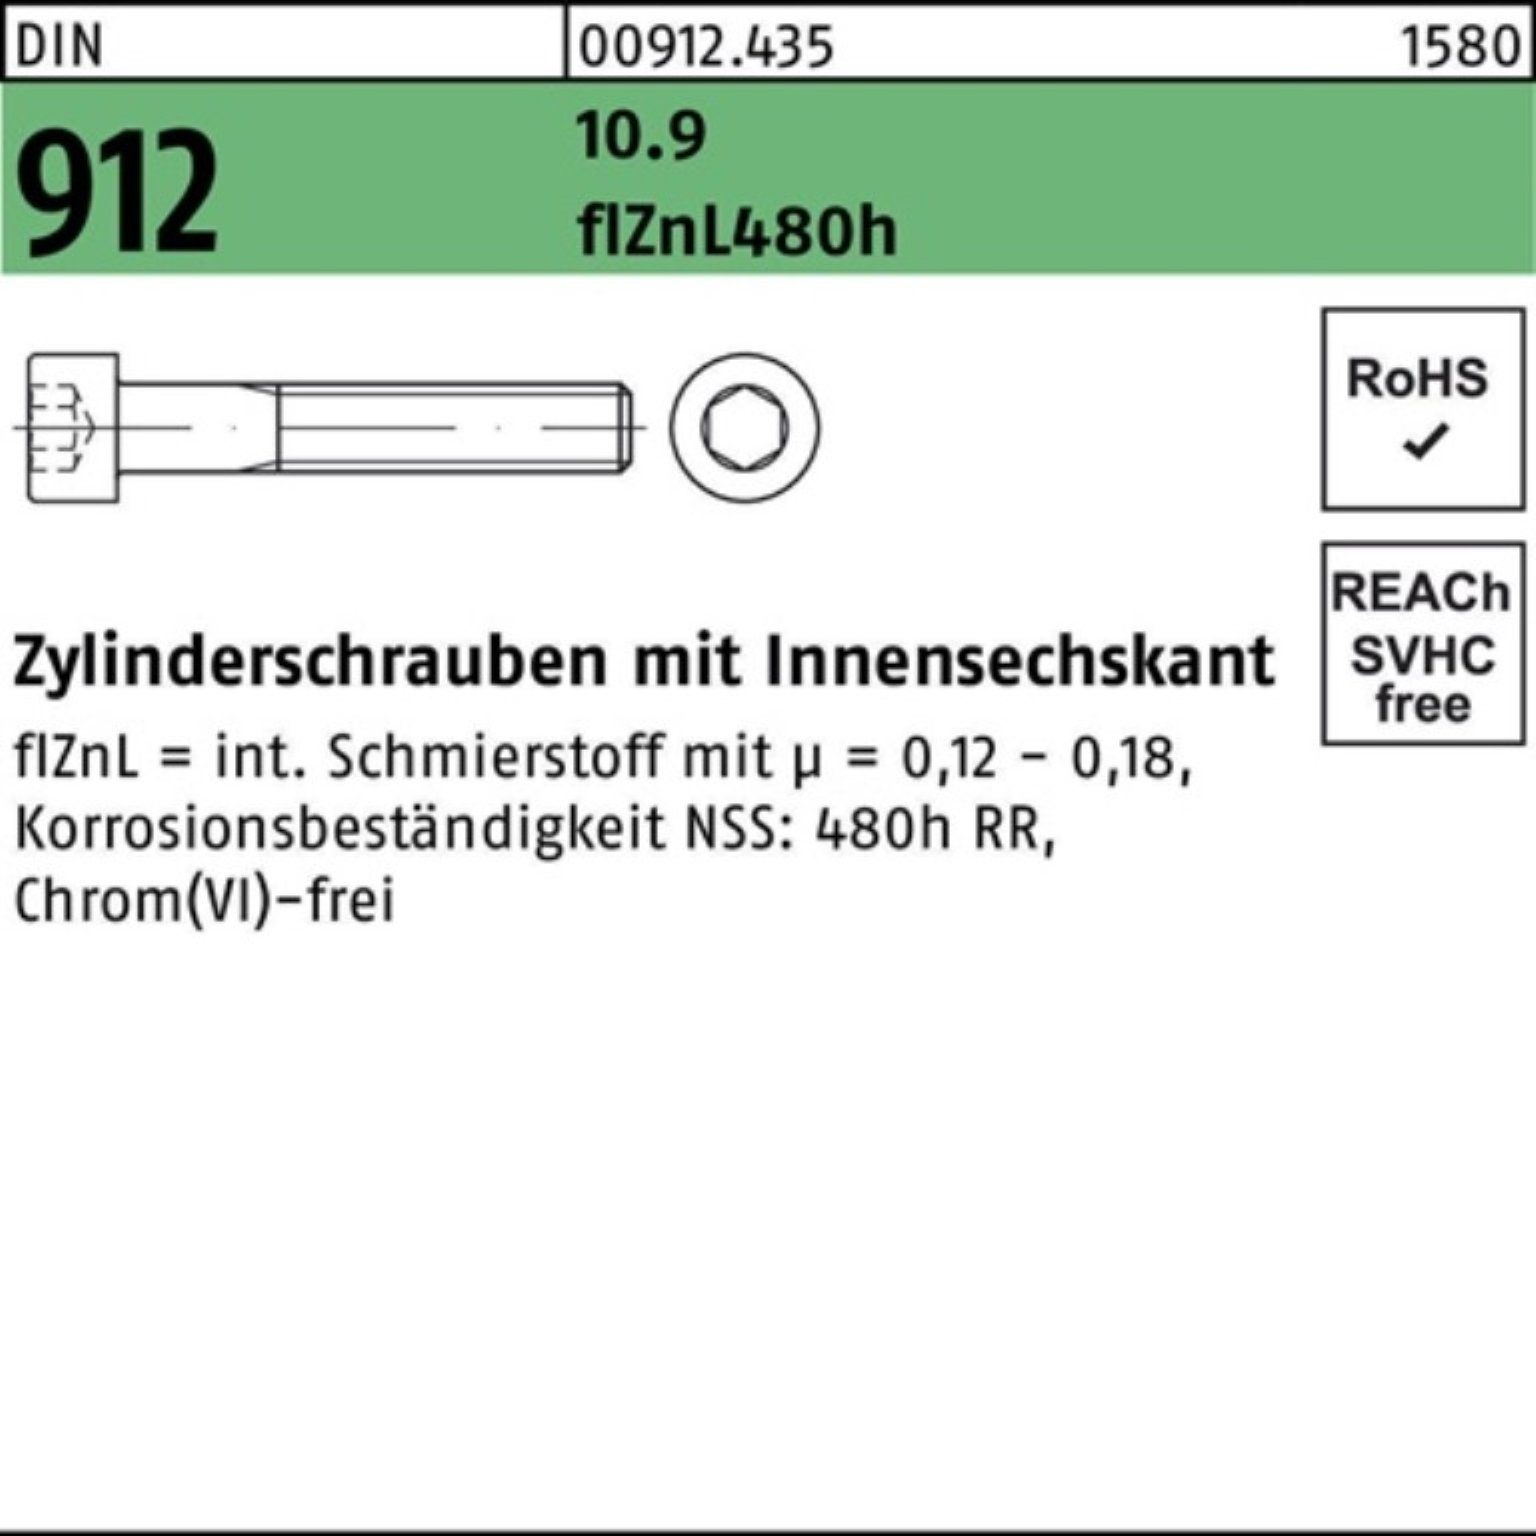 10.9 DIN Zylinderschraube 912 Innen-6kt Pack M10x90 Zylinderschraube 100er flZnL/nc/x/x Reyher